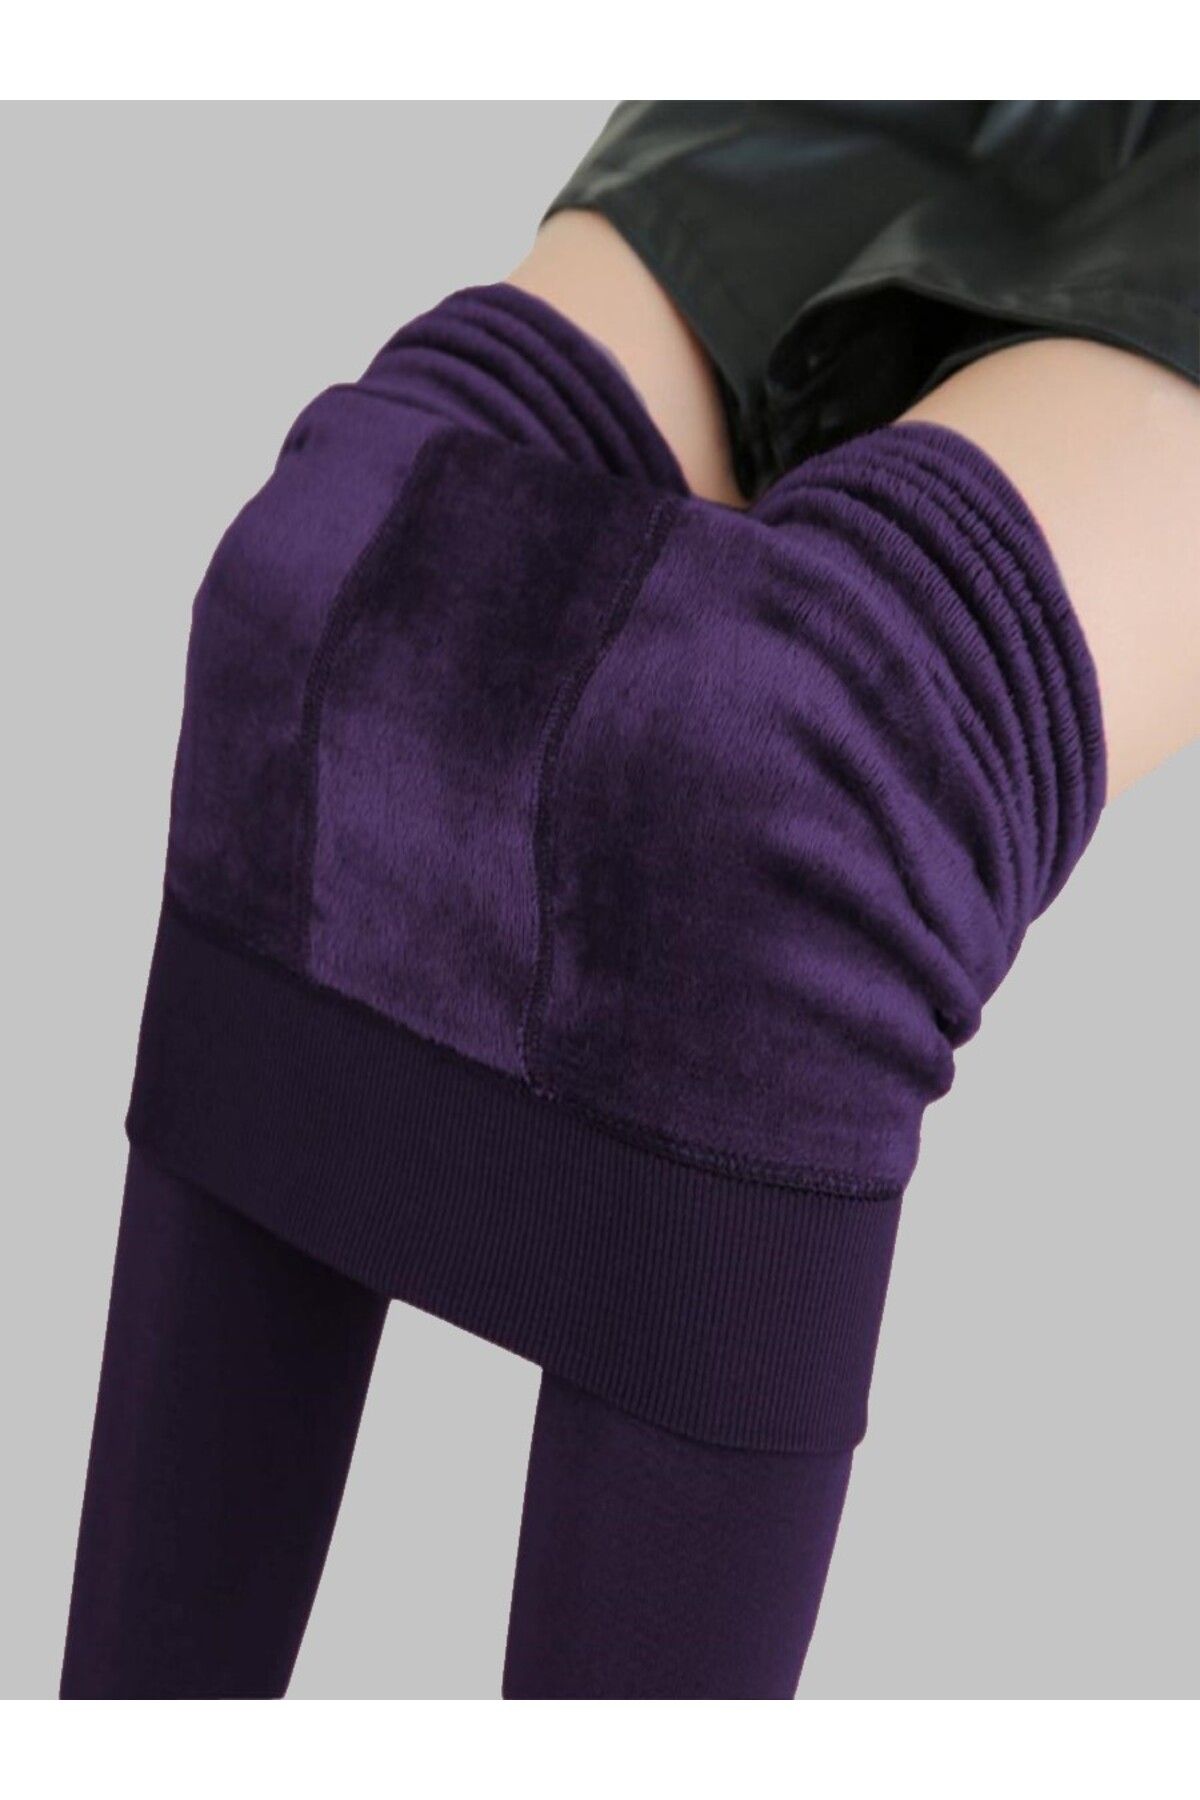 MİSTİRİK Ravena Model Külotlu Çorap Inceltici Fit Içi Pelüşlü Tüylü Sıcak Tutan Çorap Mor Renk